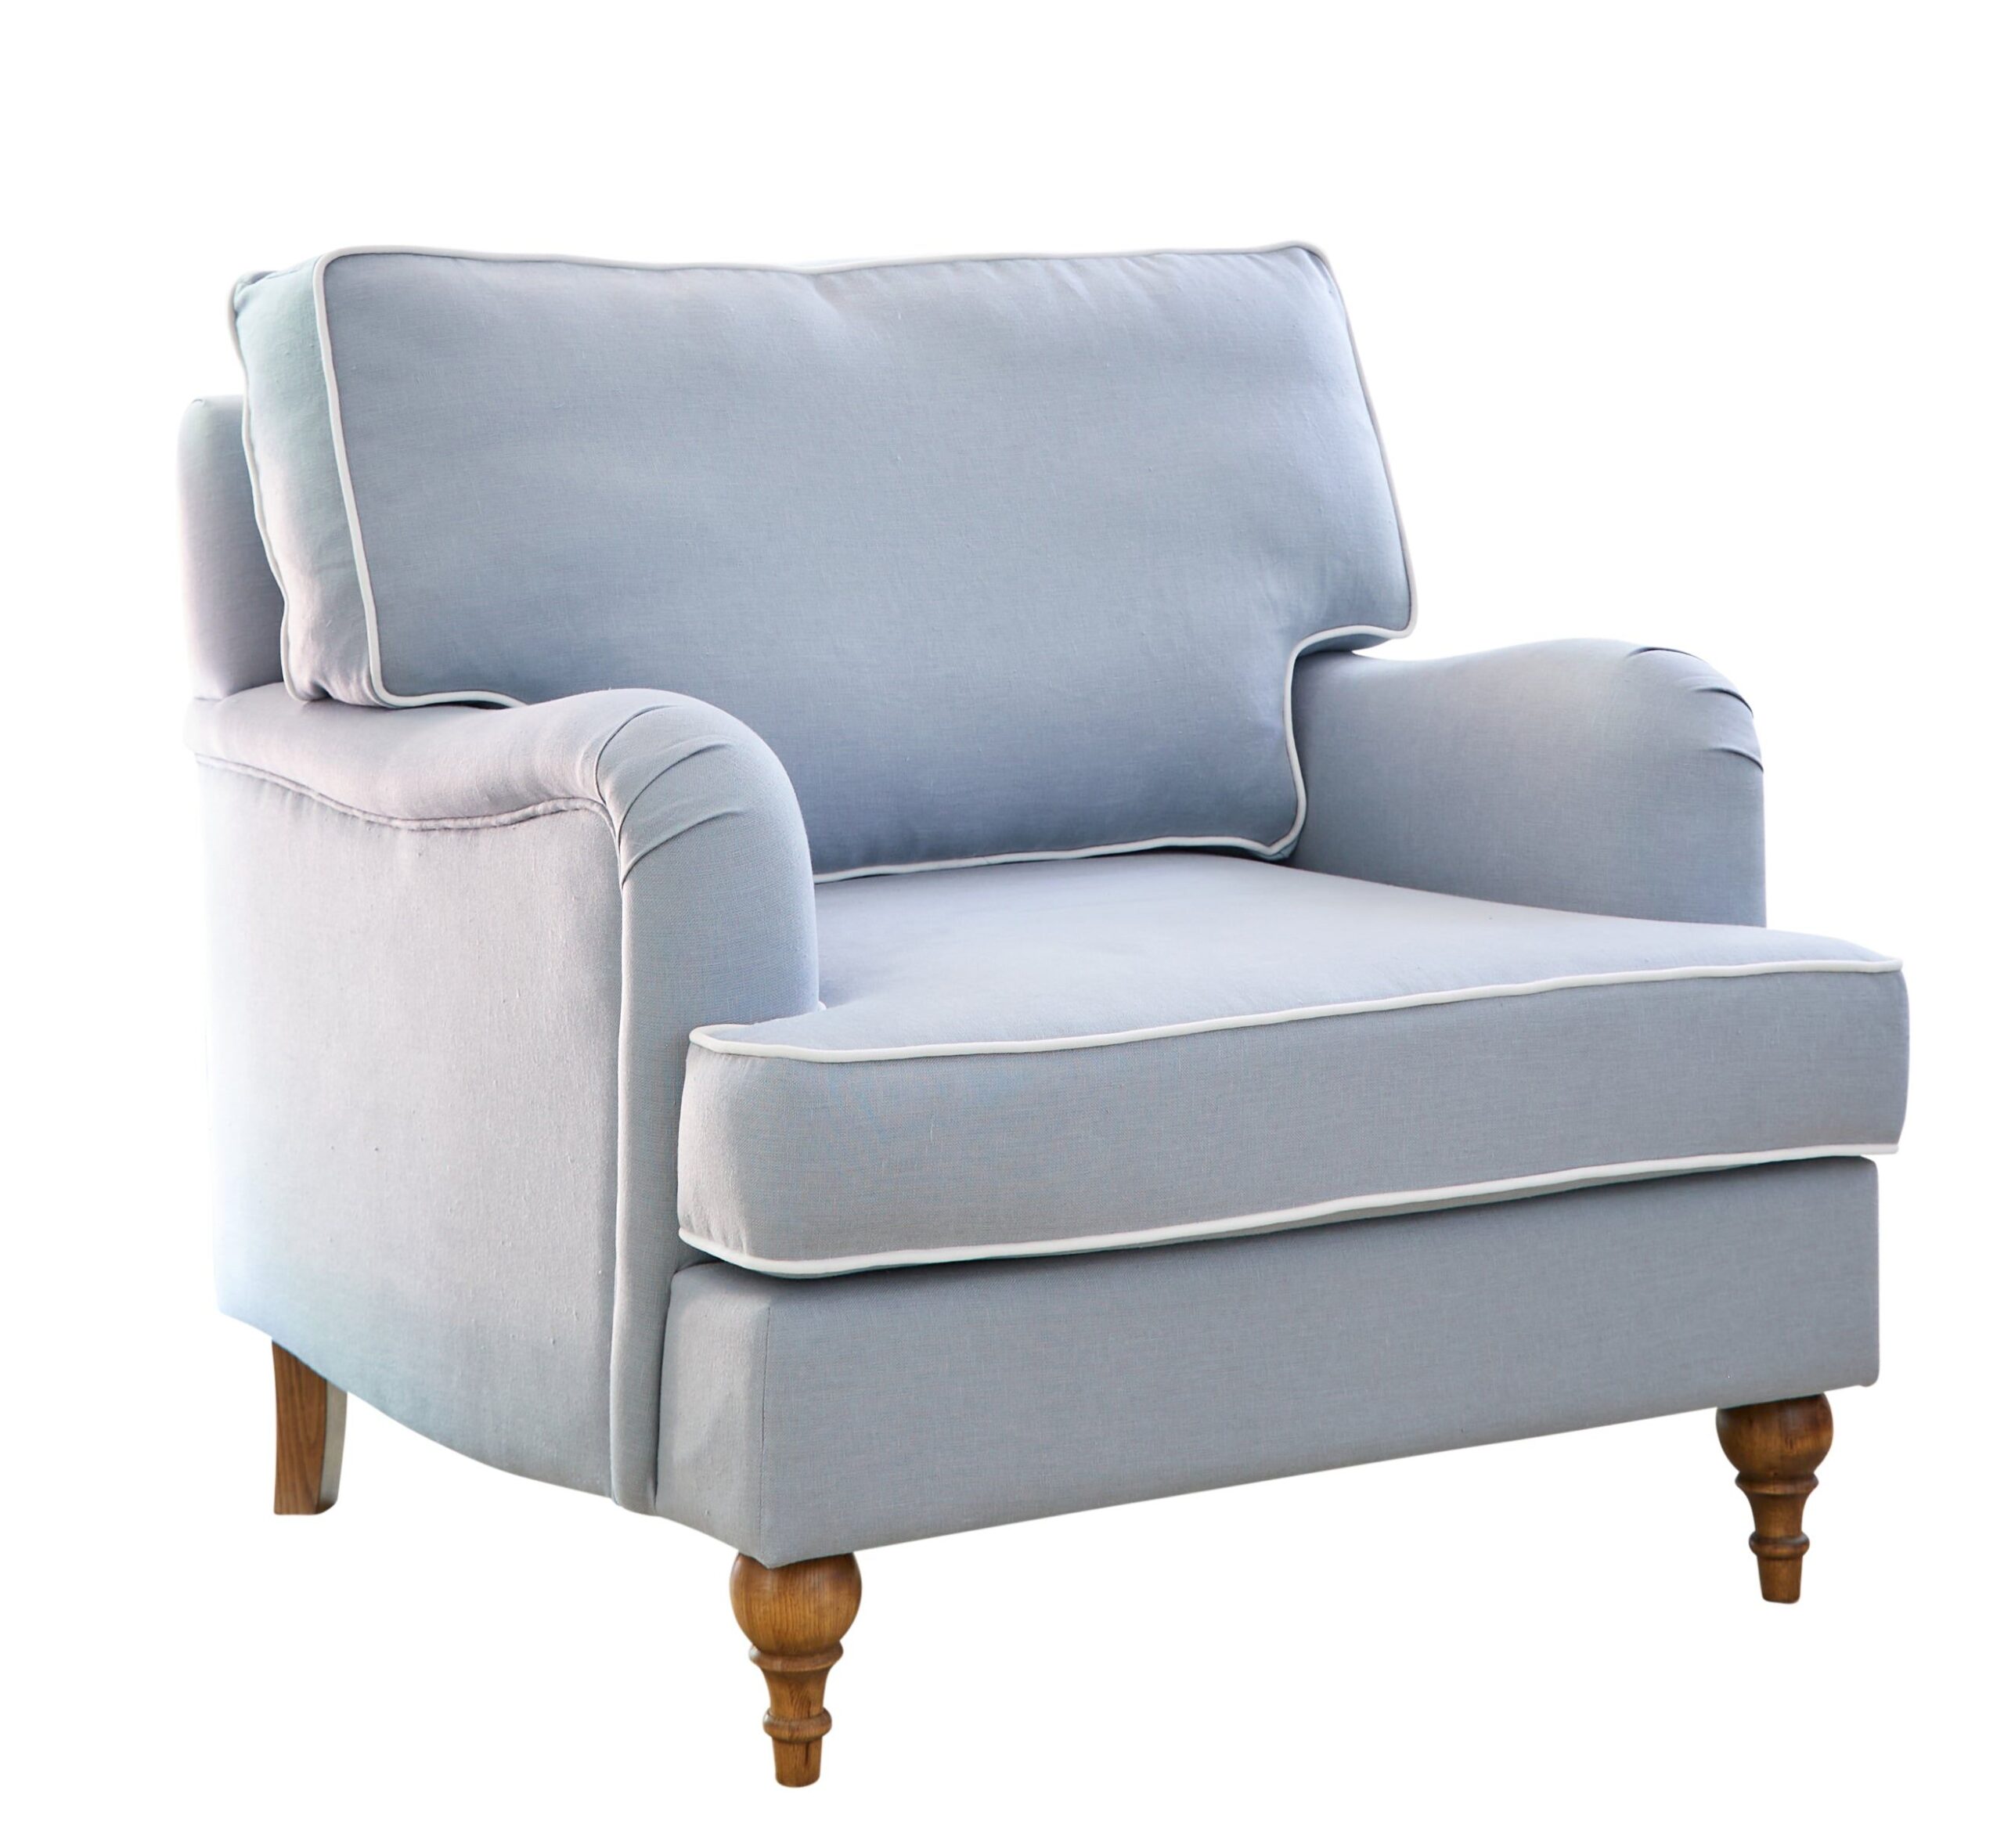 Inspiring design ideas for a blue sofa
  living room